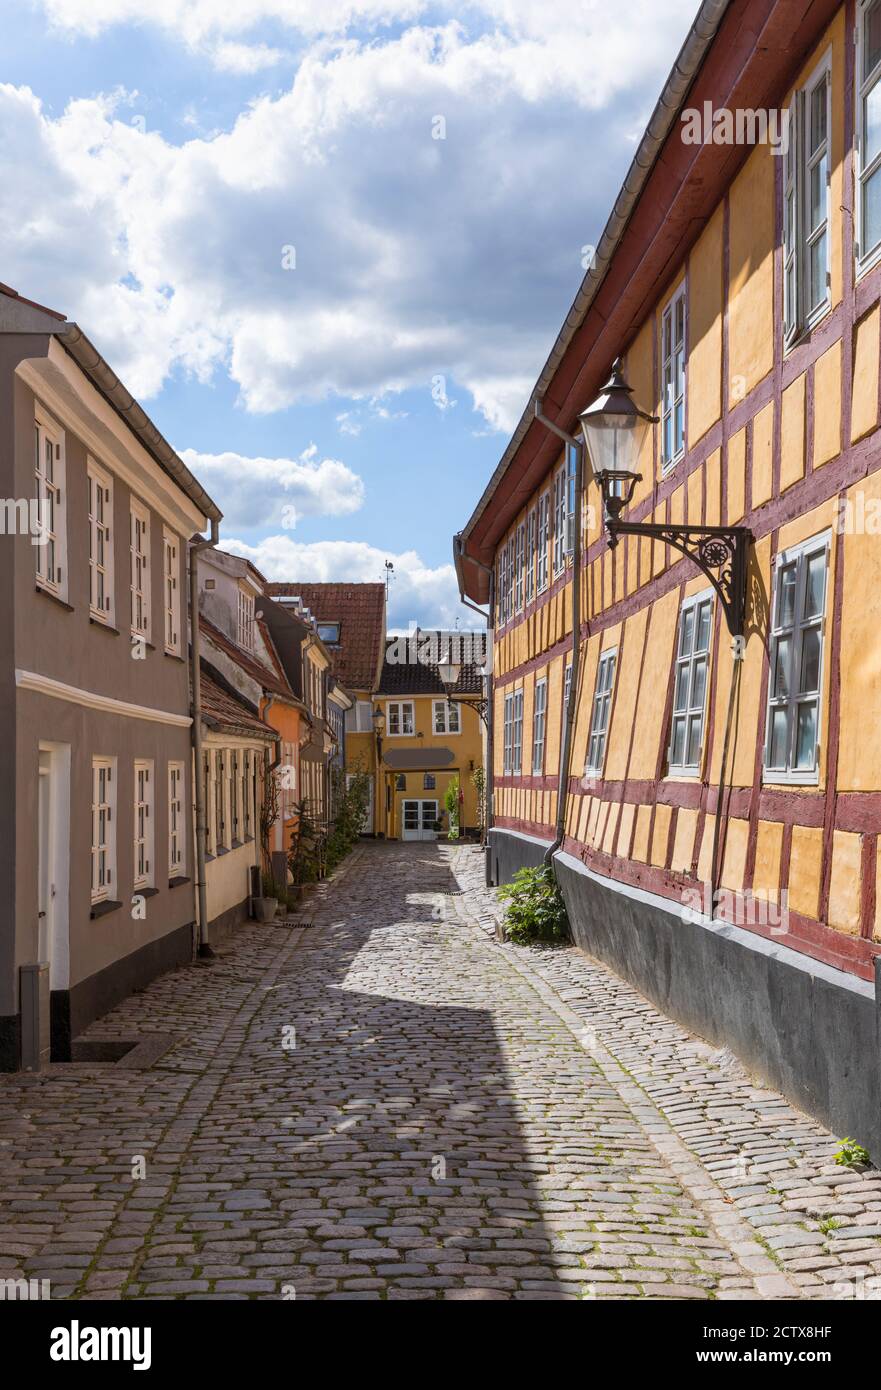 Case colorate inclinate su strade medievali acciottolate nel centro storico di Aalborg, Danimarca Foto Stock